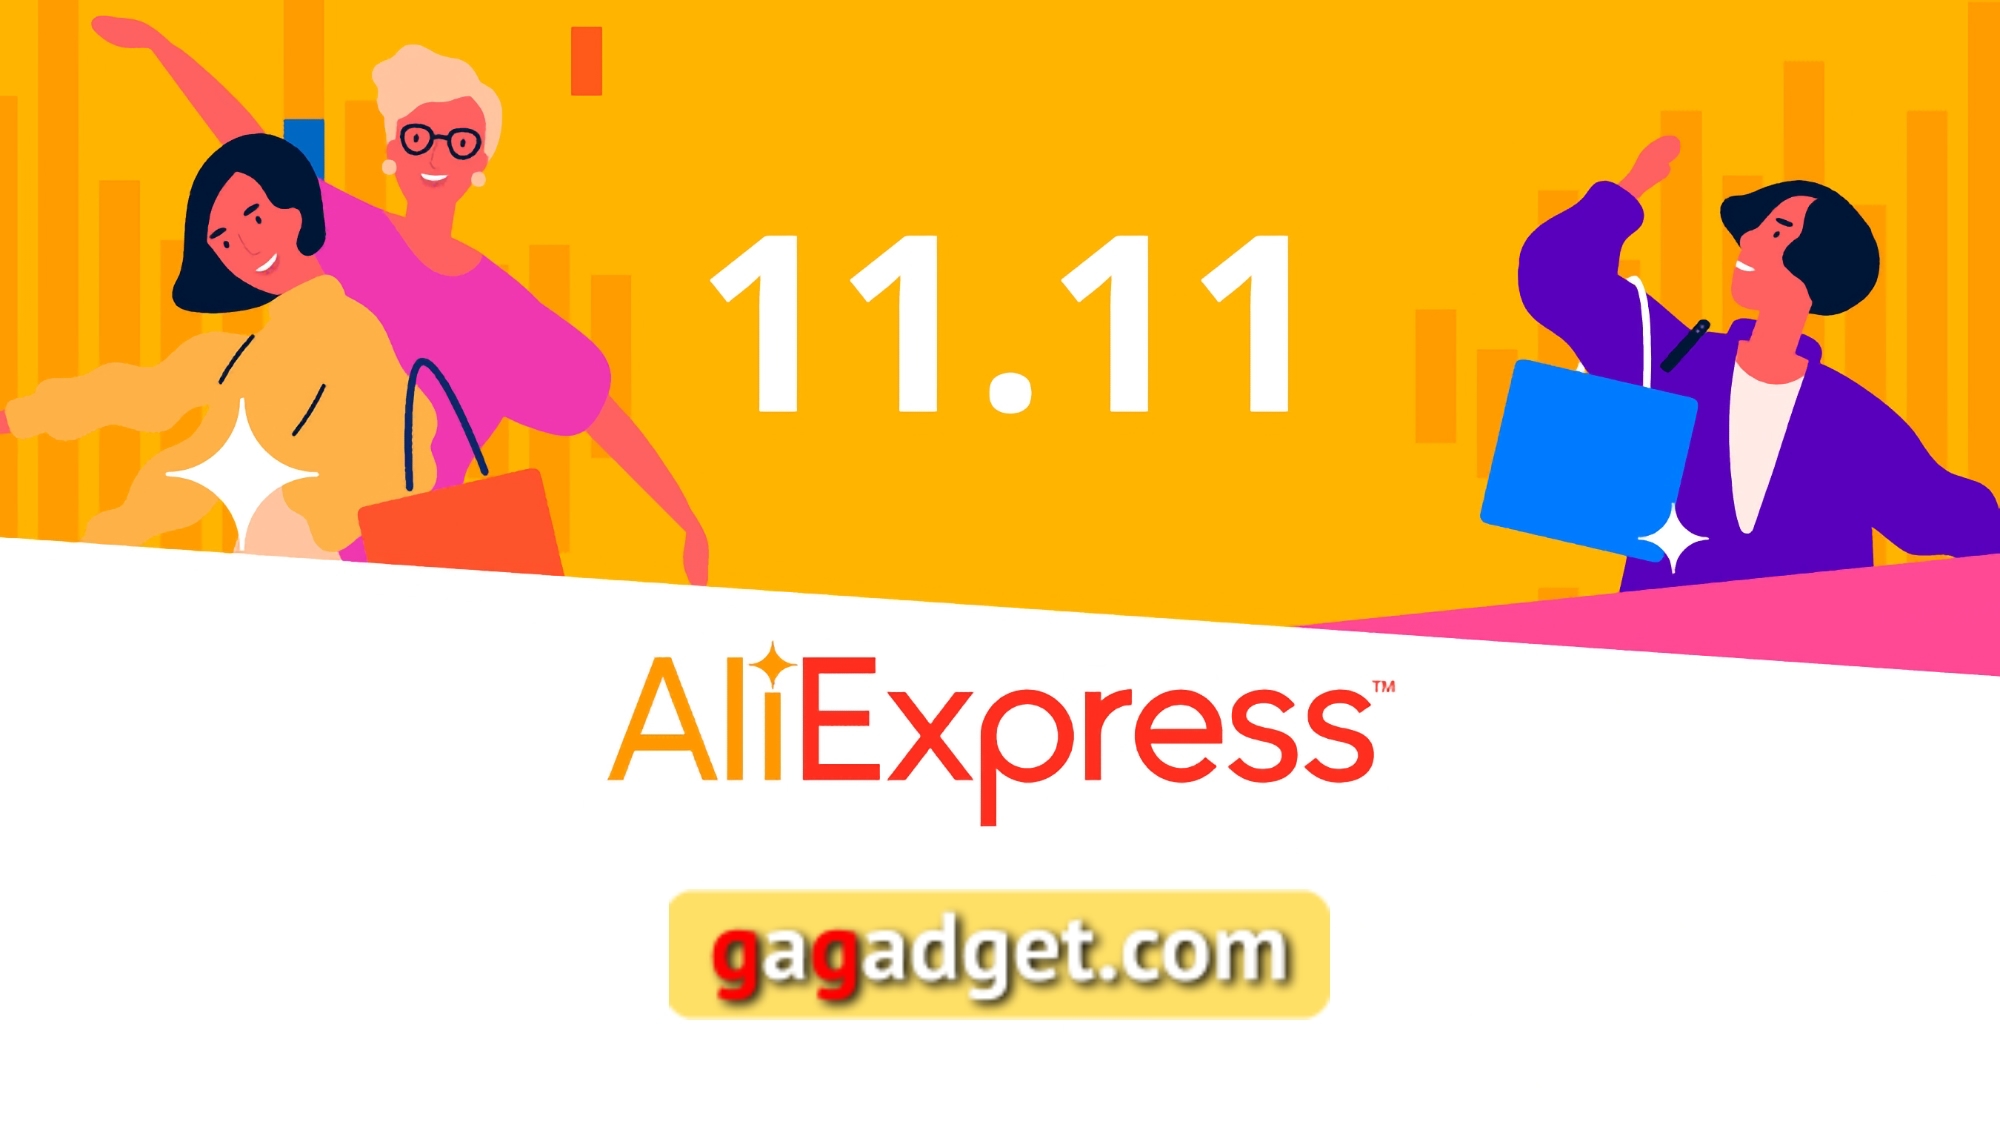 Spezielle AliExpress Promo-Codes für den 11.11 Verkauf für gagadget Leser